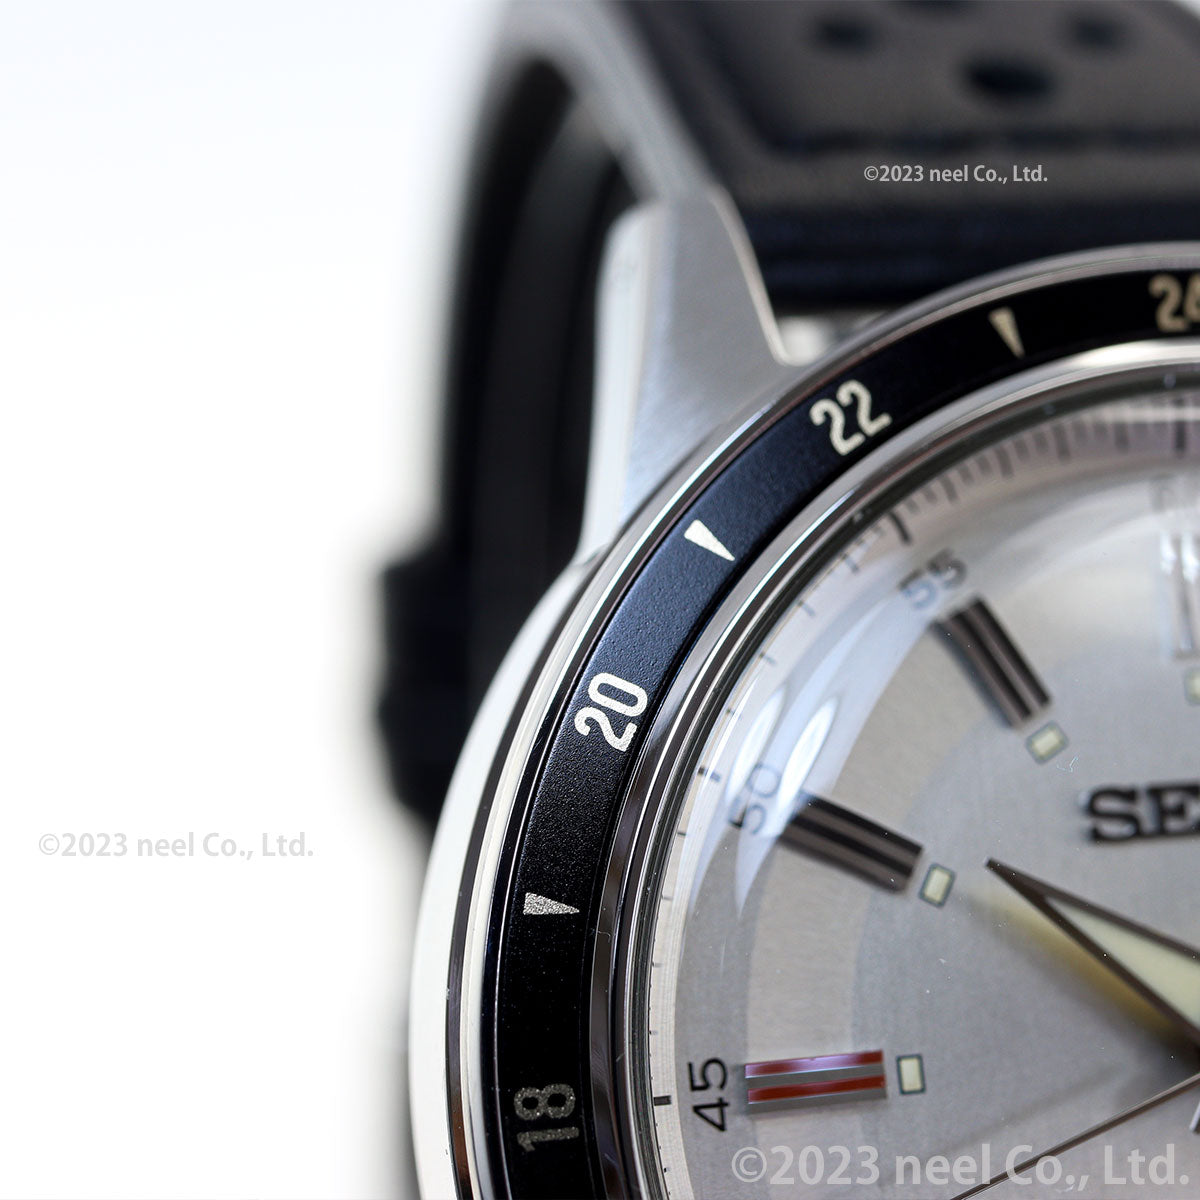 セイコー プレザージュ SEIKO PRESAGE 自動巻き メカニカル 腕時計 メンズ ベーシックライン SARY231 Style60's GMTモデル Journey on the road